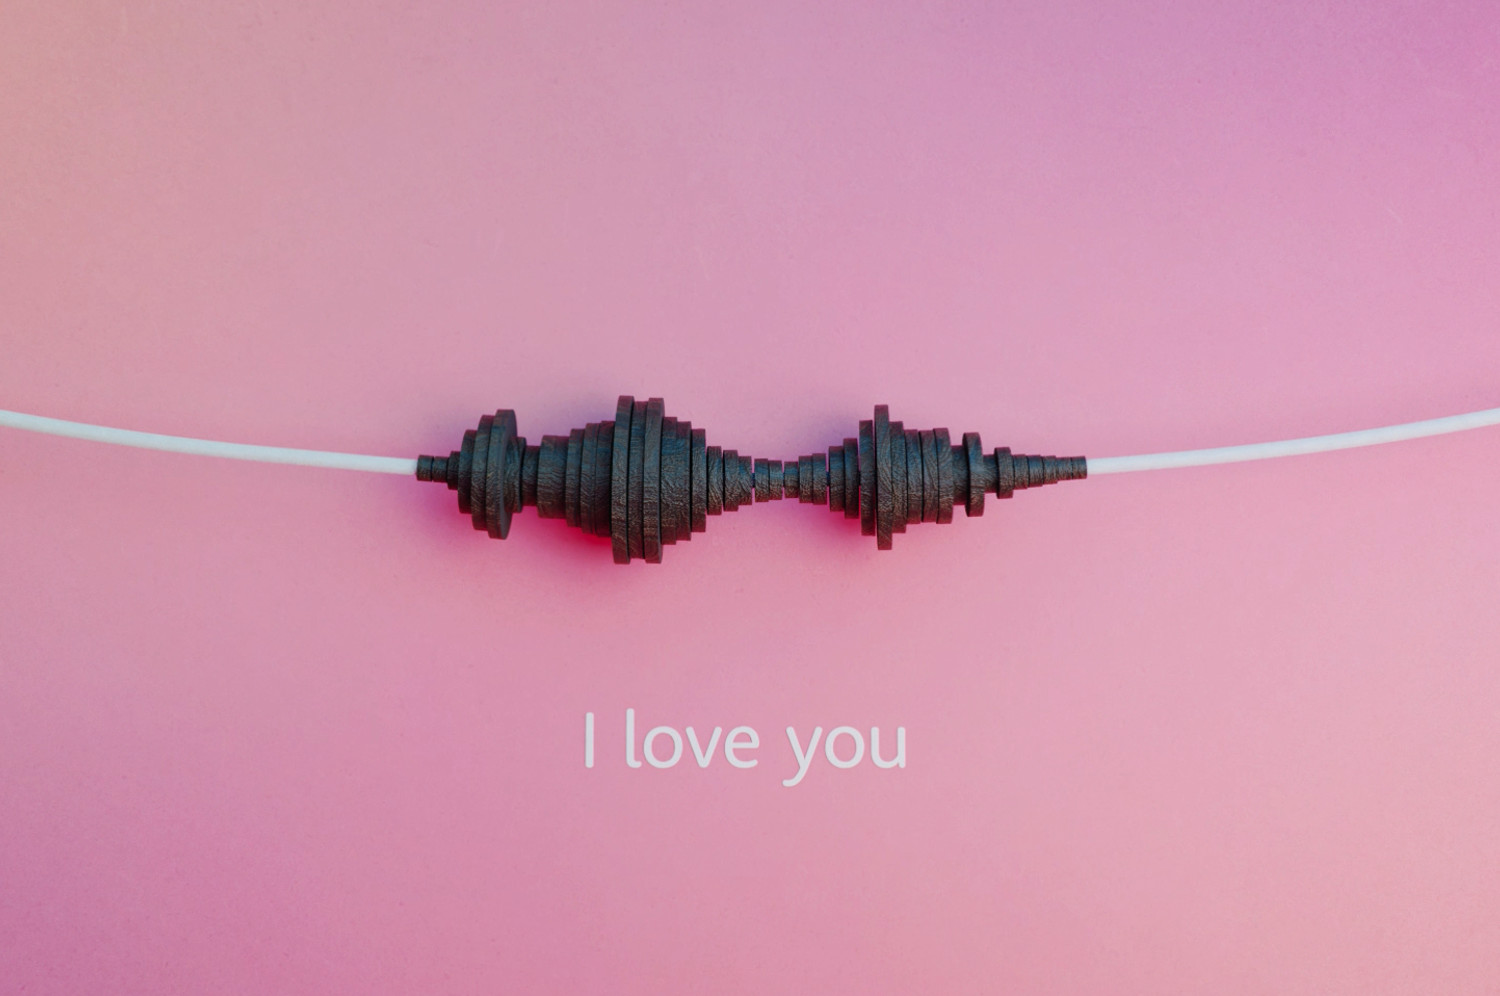 "I love you" - Vorschau einer Soundwave-Kette zum Thema "Digitale Kunst: David Bizer verwandelt Töne in Schmuck"